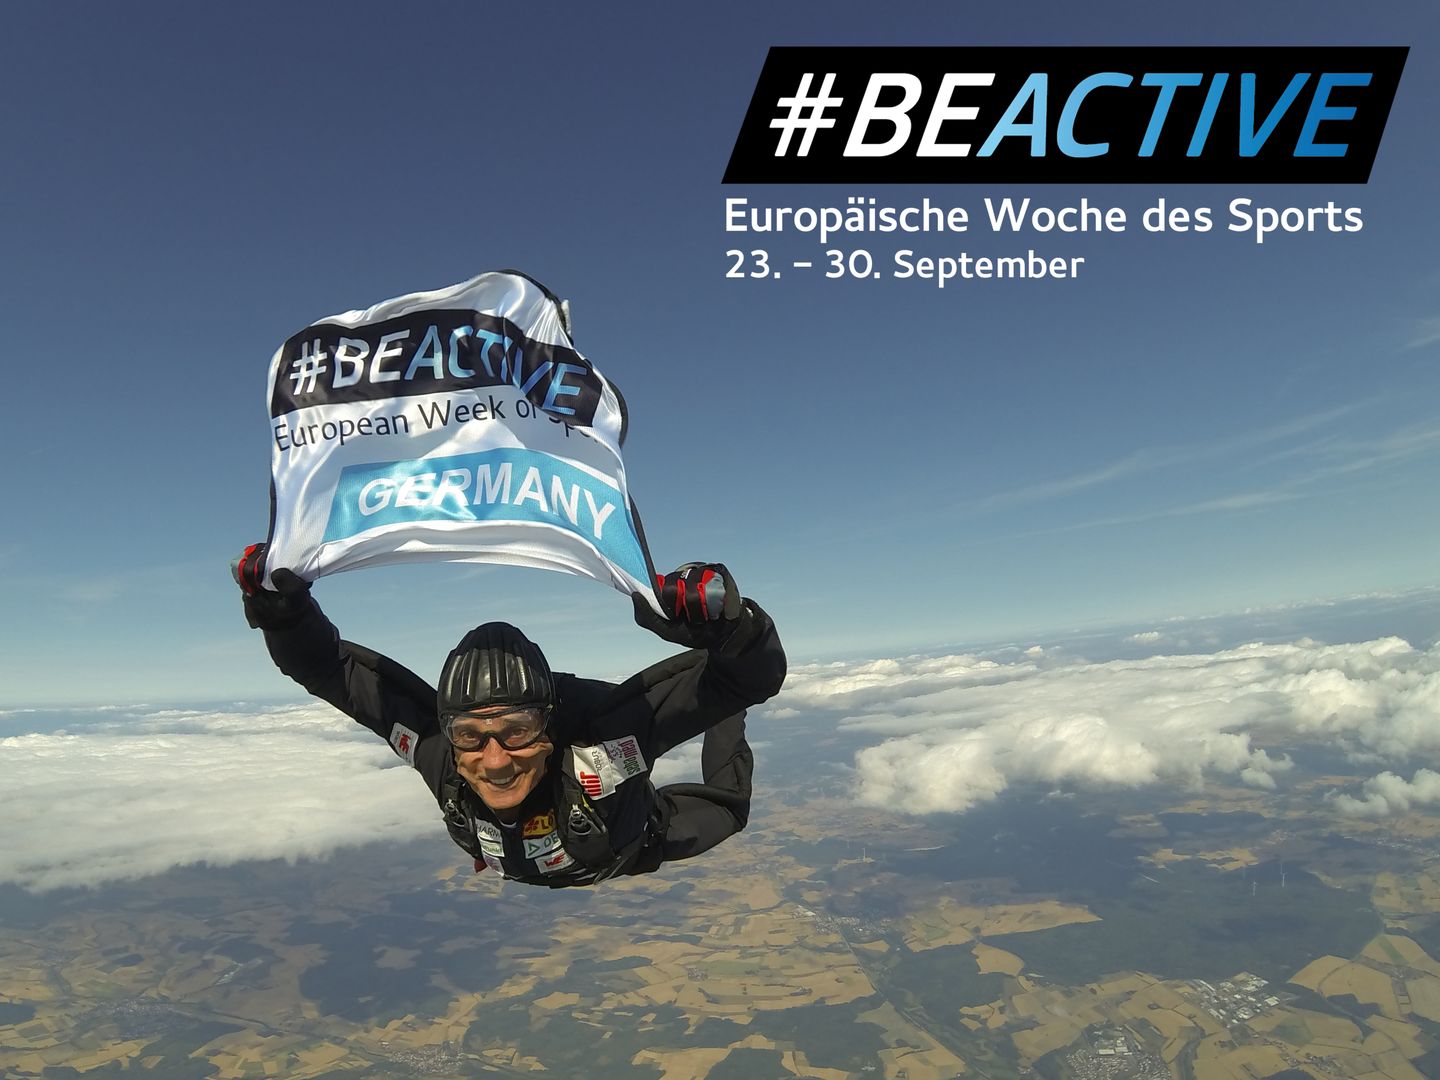 Eberhard Gienger hält eine #BEACTIVE Flagge in der Hand.  Oben rechts im Bild ist das Logo von #BEACTIVE. Darunter steht in weißer Schrift "Europäische Woche des Sports 23.-30. September